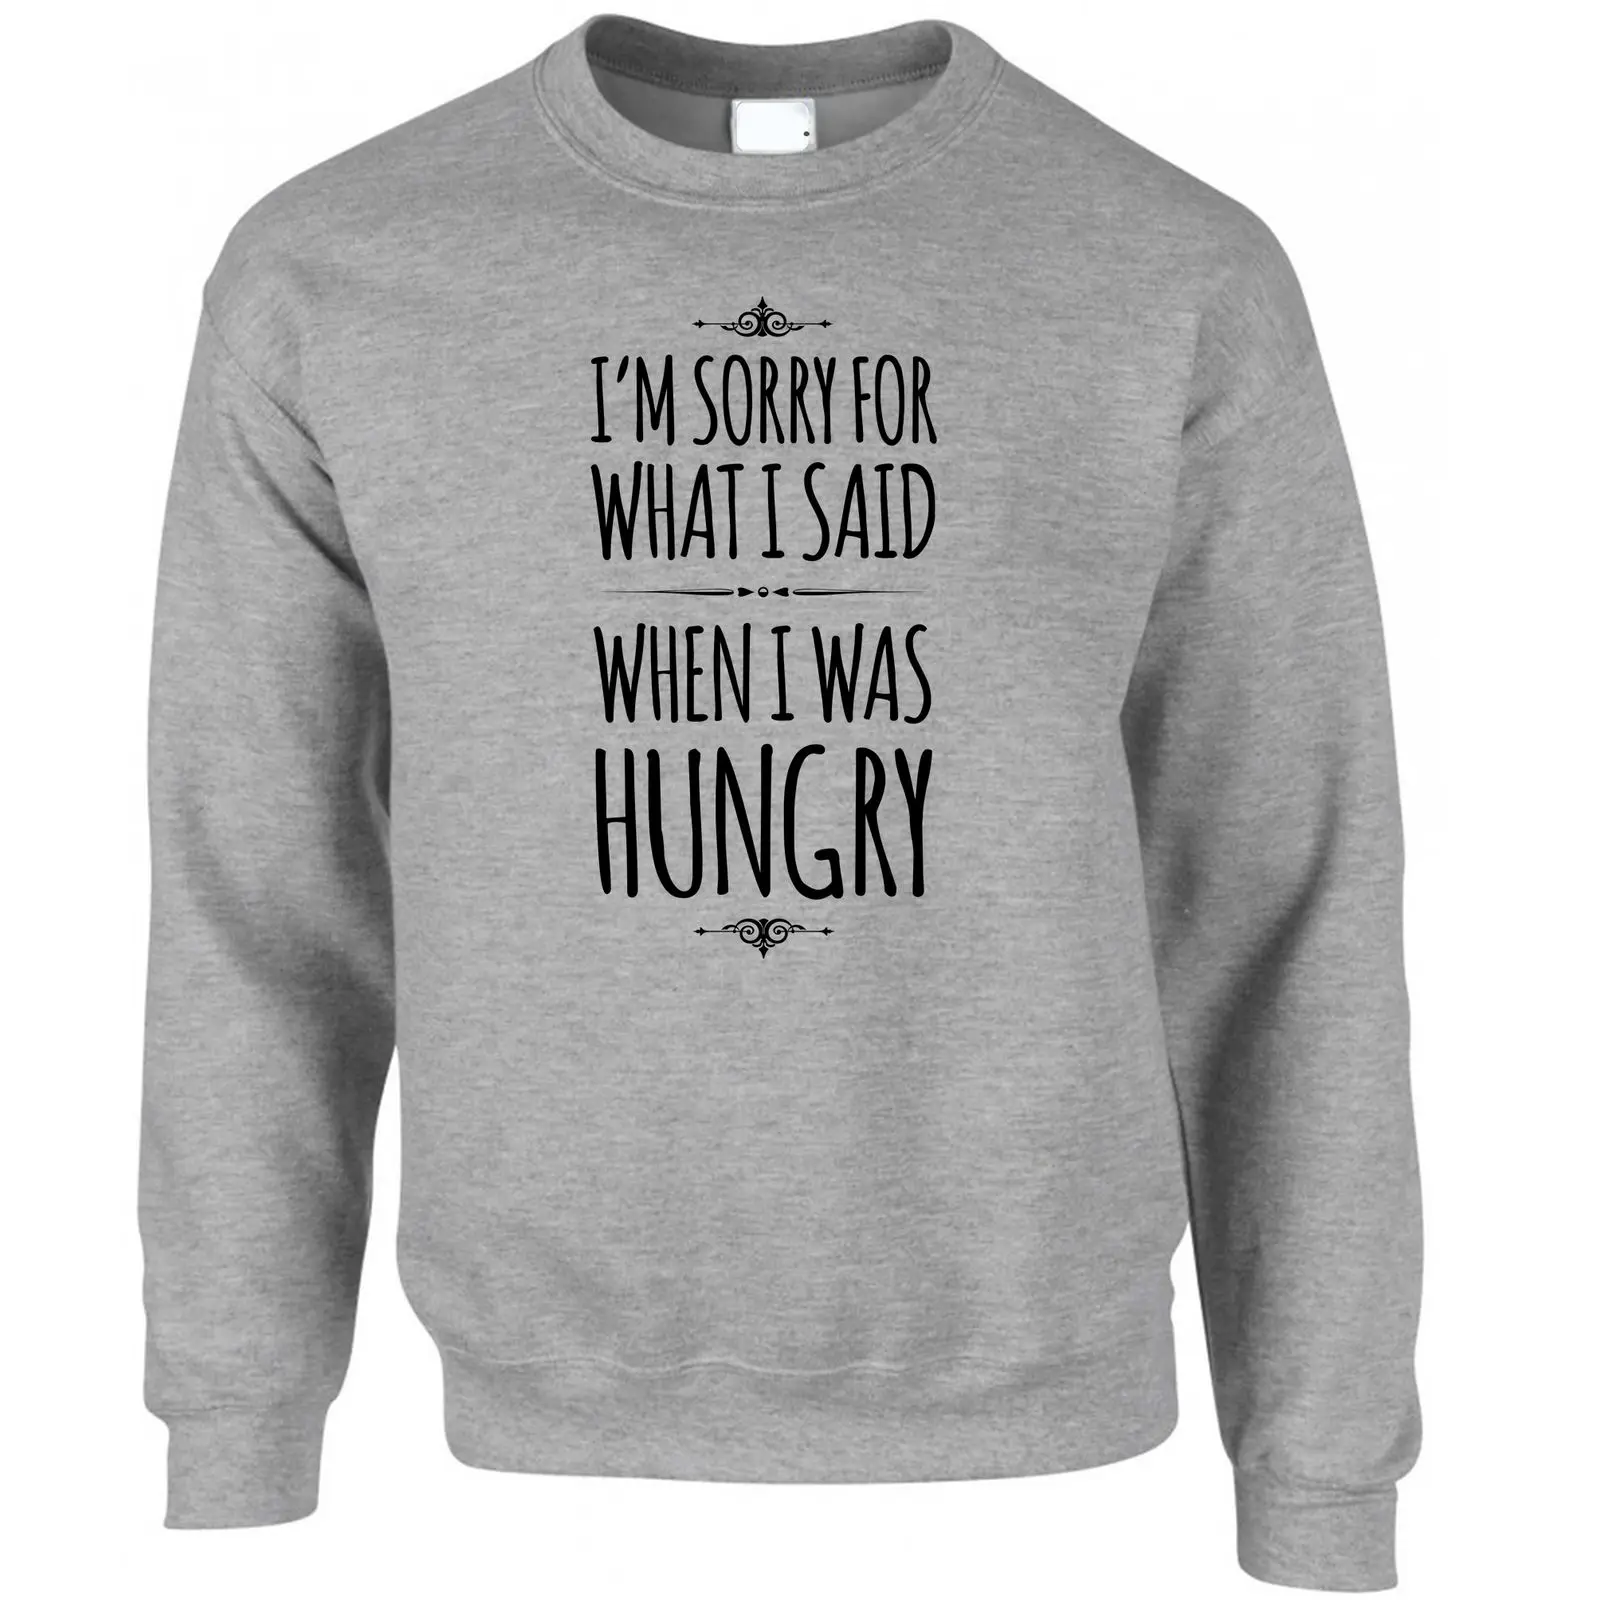 I & #039; m извините за то, что я сказал, когда я был голоден, принт слоган дизайн джемпер свитер